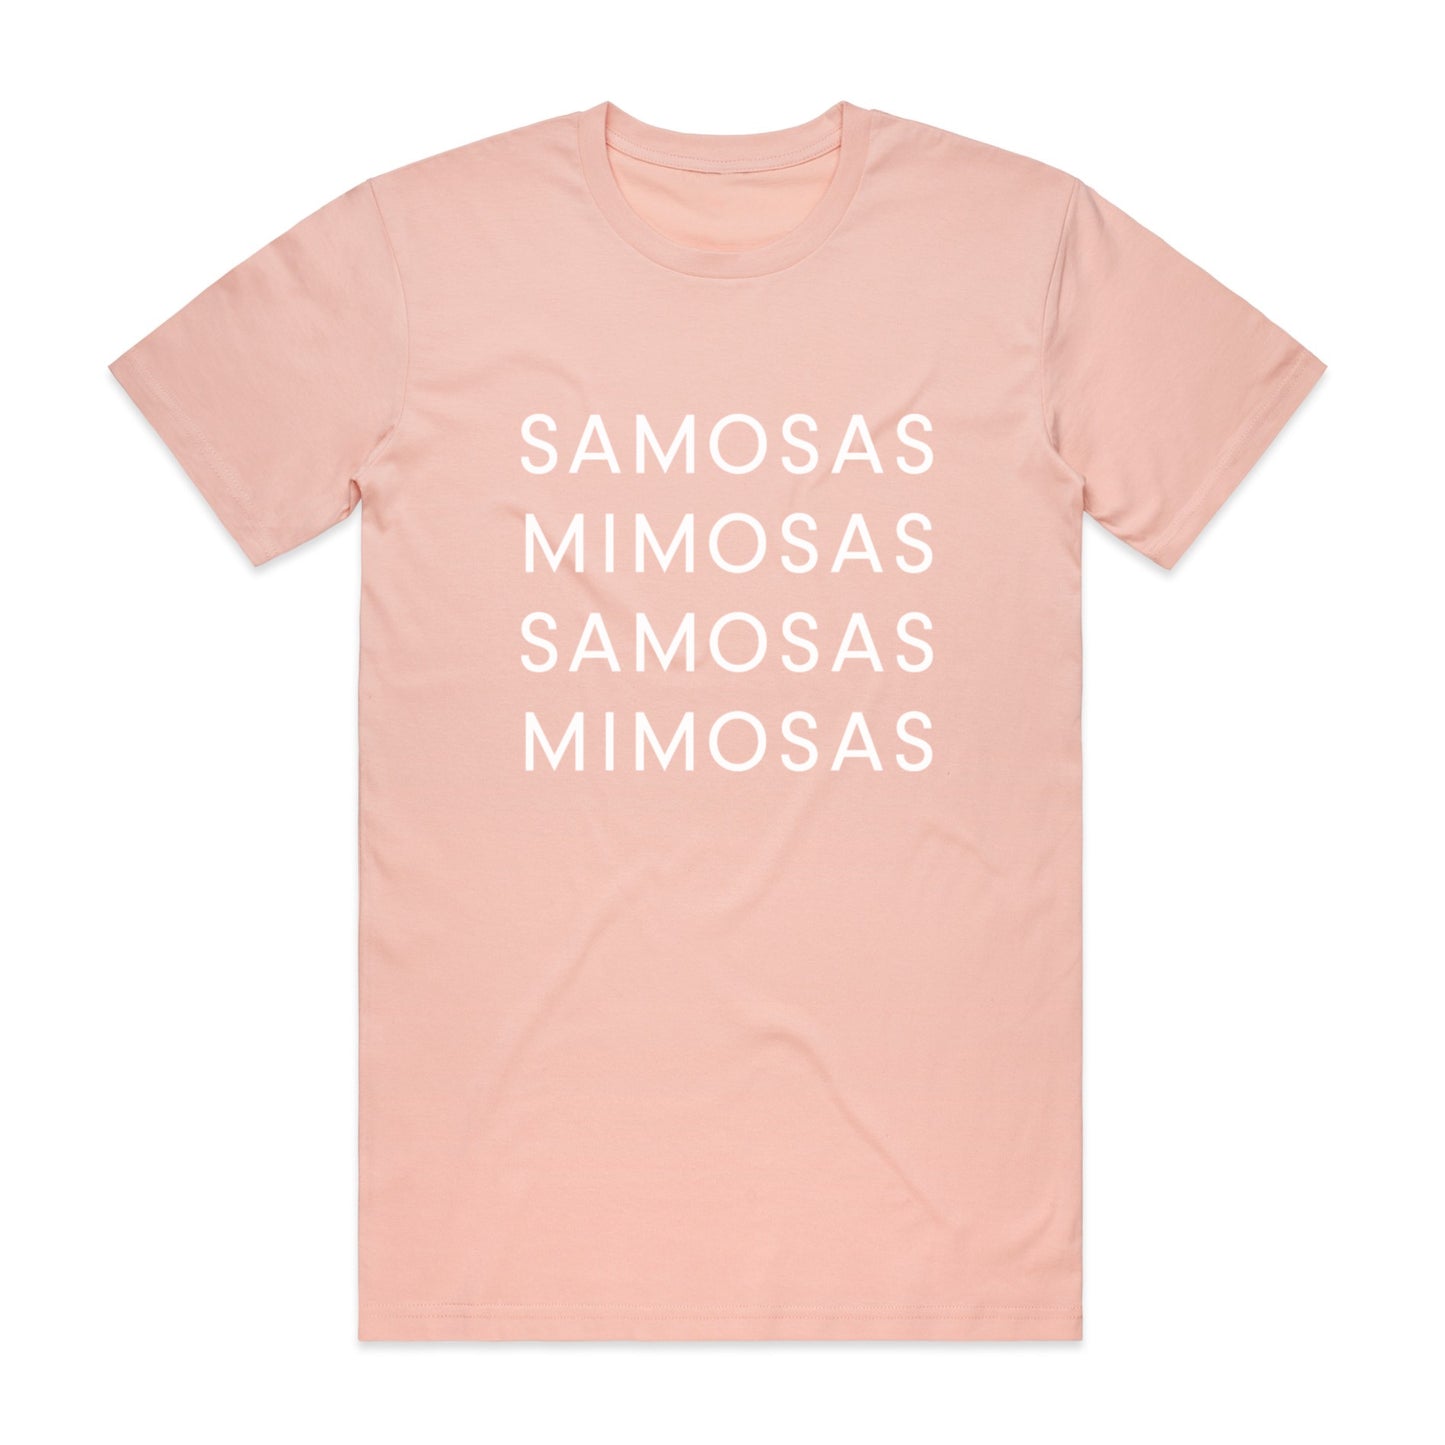 phenomenal Samosas and Mimosas 